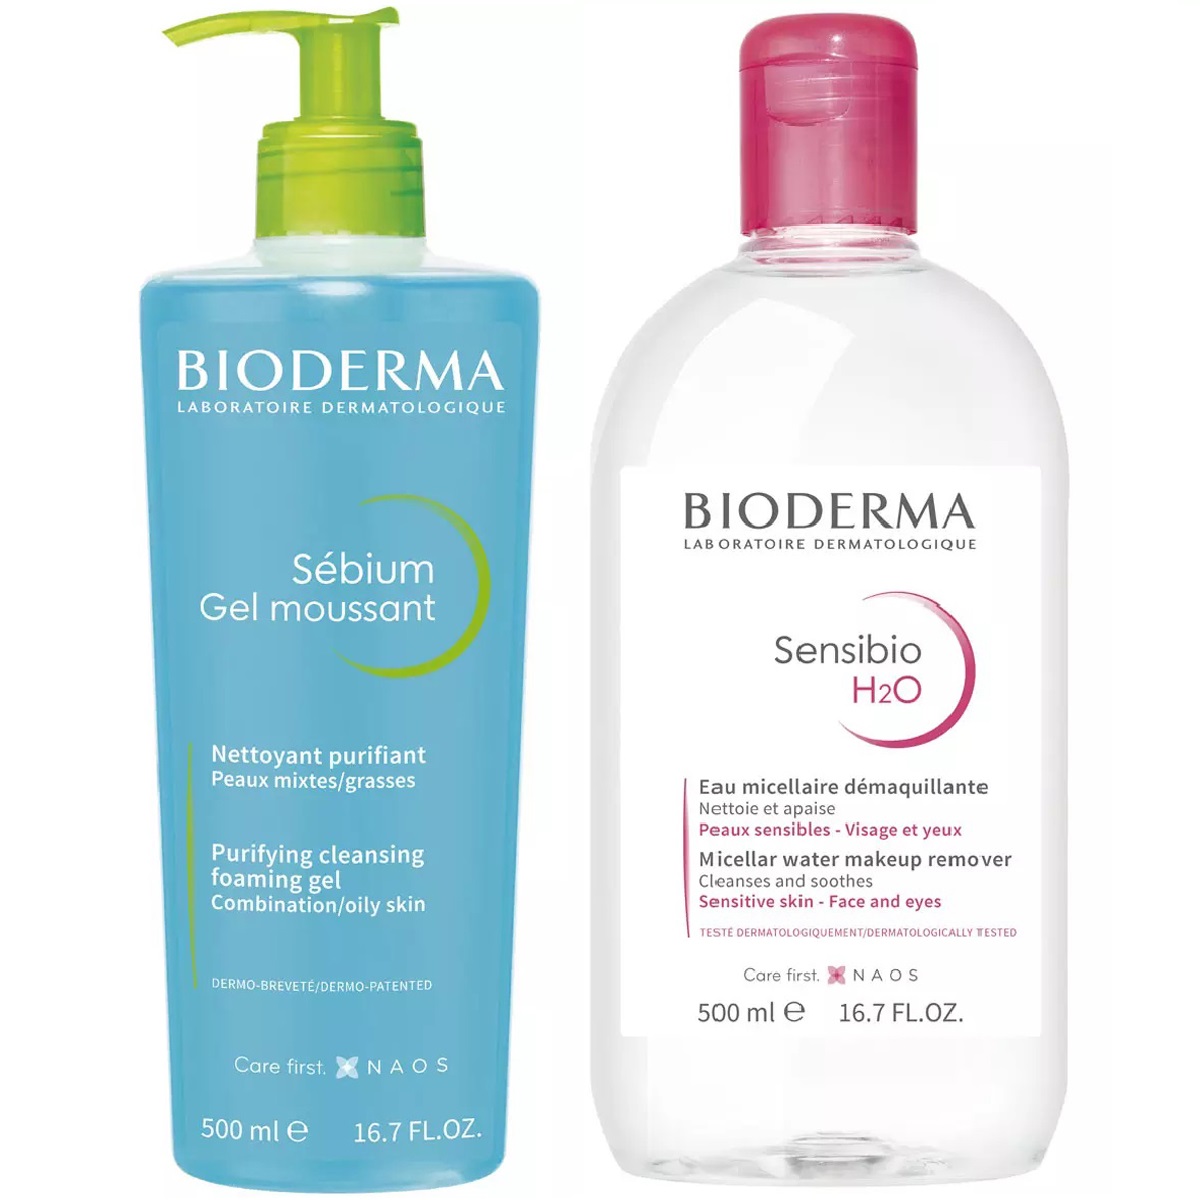 Bioderma Набор для очищения жирной кожи: гель, 500 мл + мицеллярная вода, 500 мл (Bioderma, Sebium) bioderma сенсибио н20 мицеллярная вода 500 мл